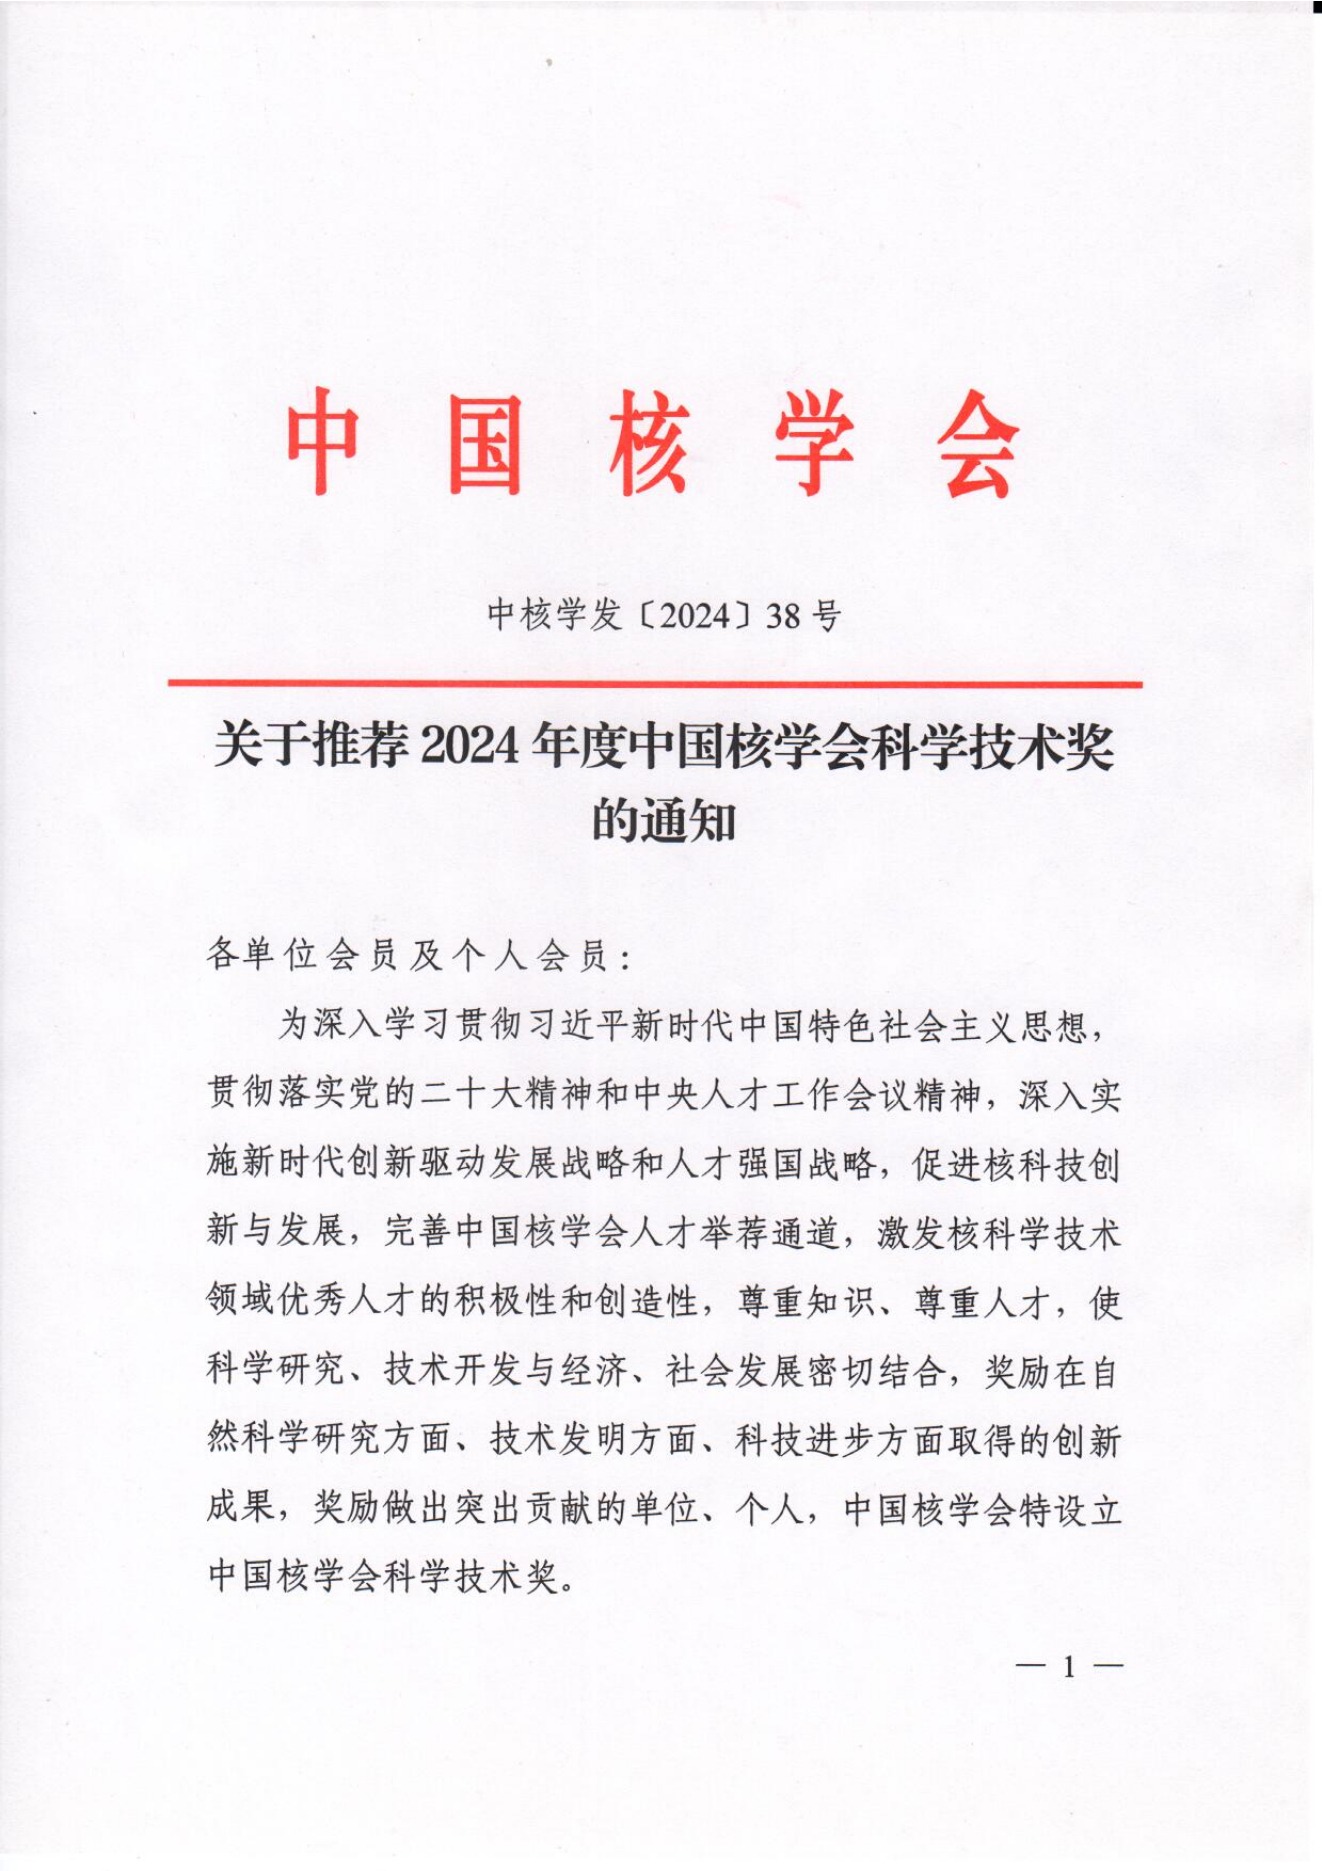 关于推荐2024年度中国核学会科学技术奖的通知-3.1_00.png